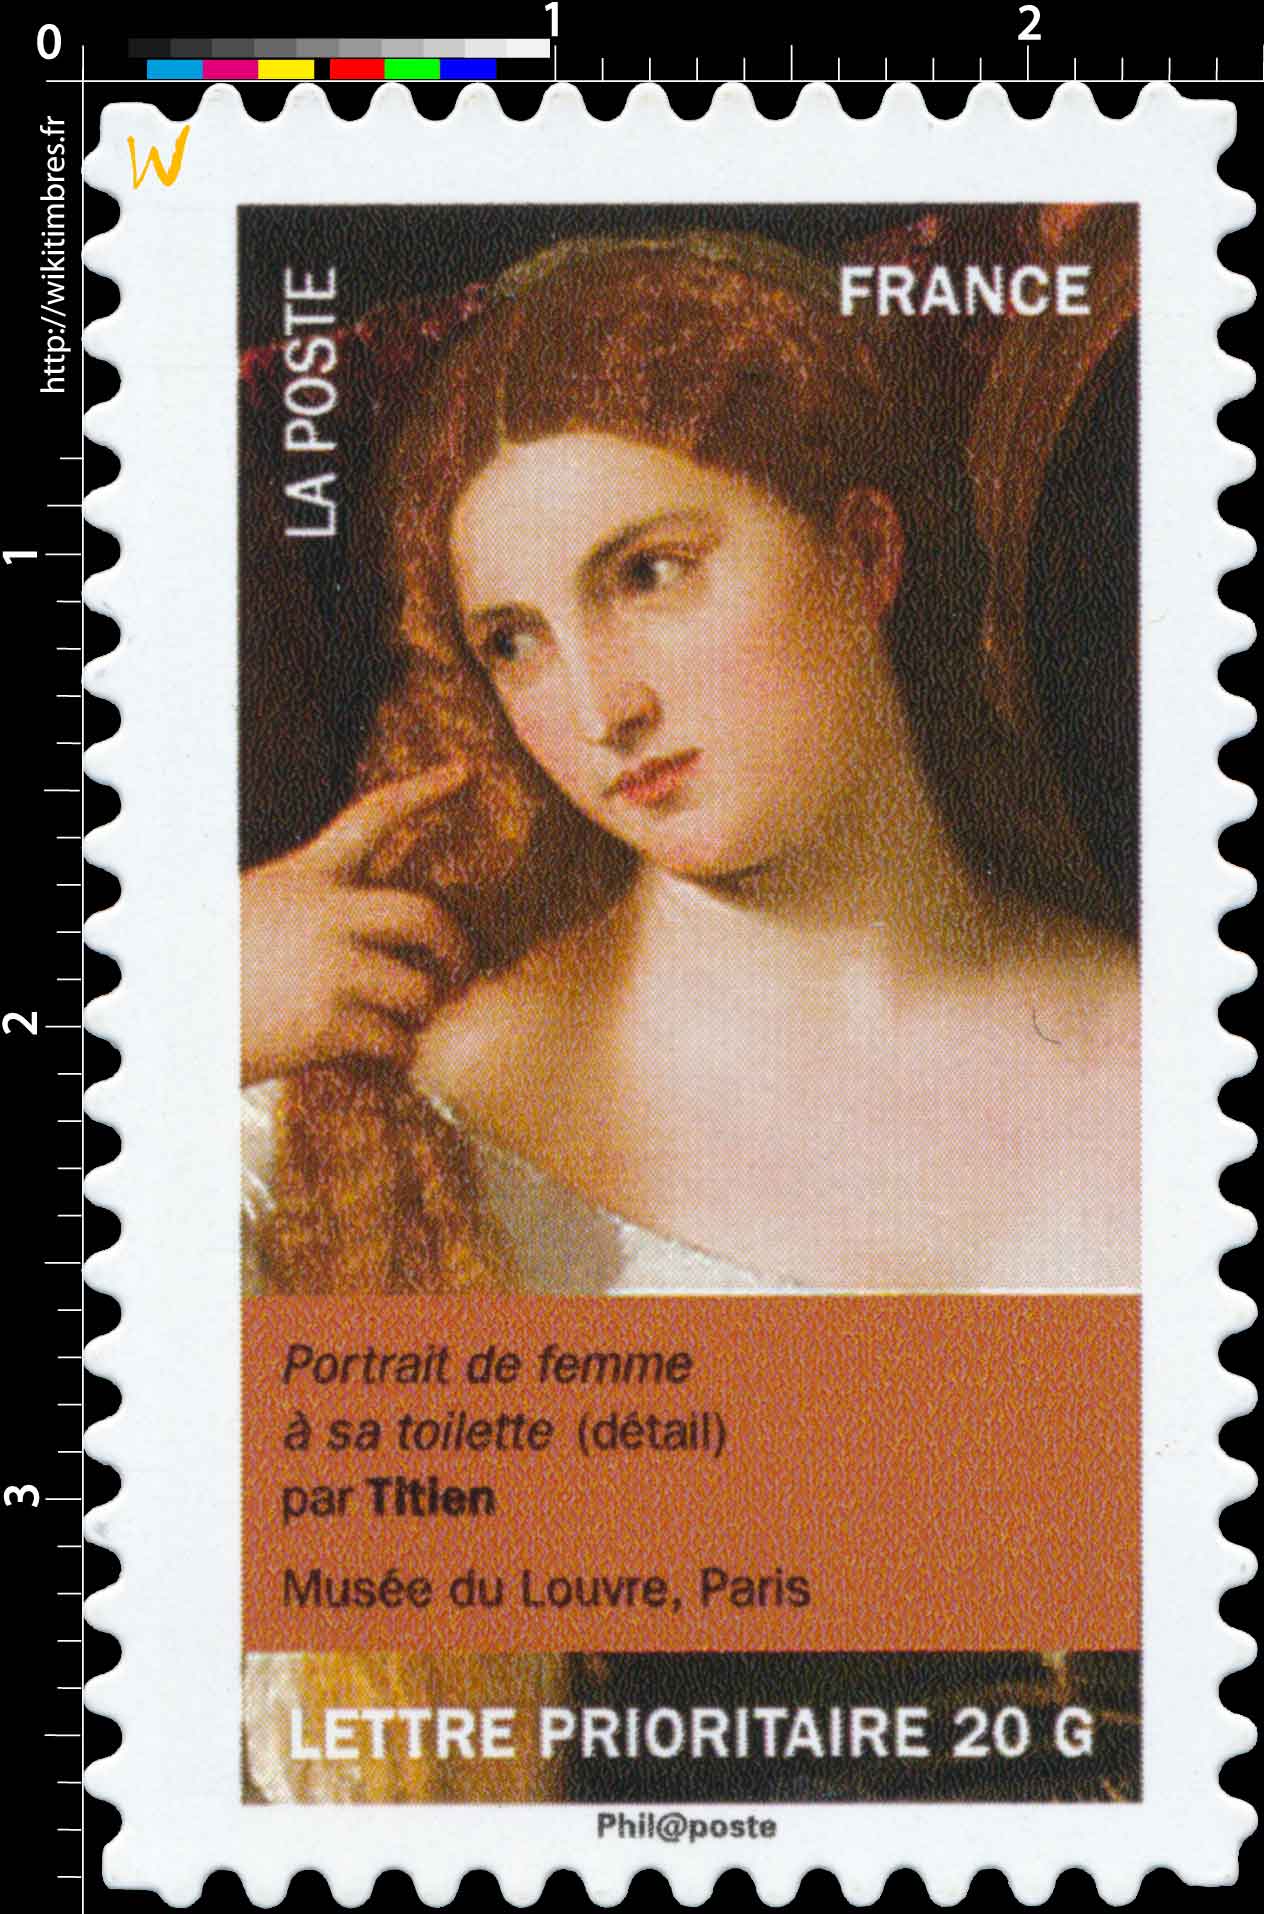 portrait de femme à sa toilette (détail) par Titien, musée du Louvre, Paris